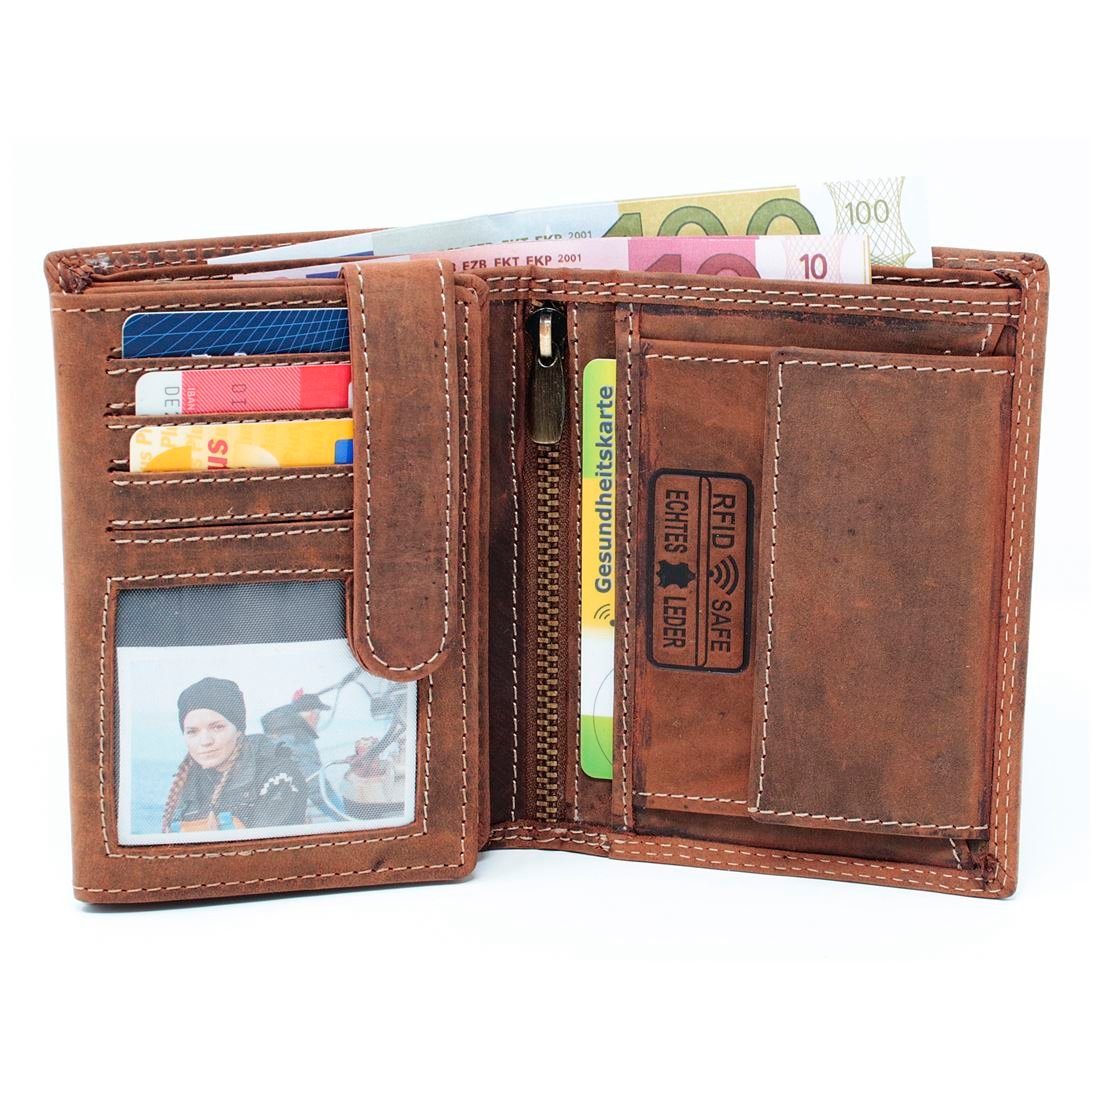 Schutz Männerbörse Brieftasche Geldbörse Geldbörse Lederbörse Börse, mit Geldbeutel Portemonnaie RFID SHG Münzfach Leder Herren